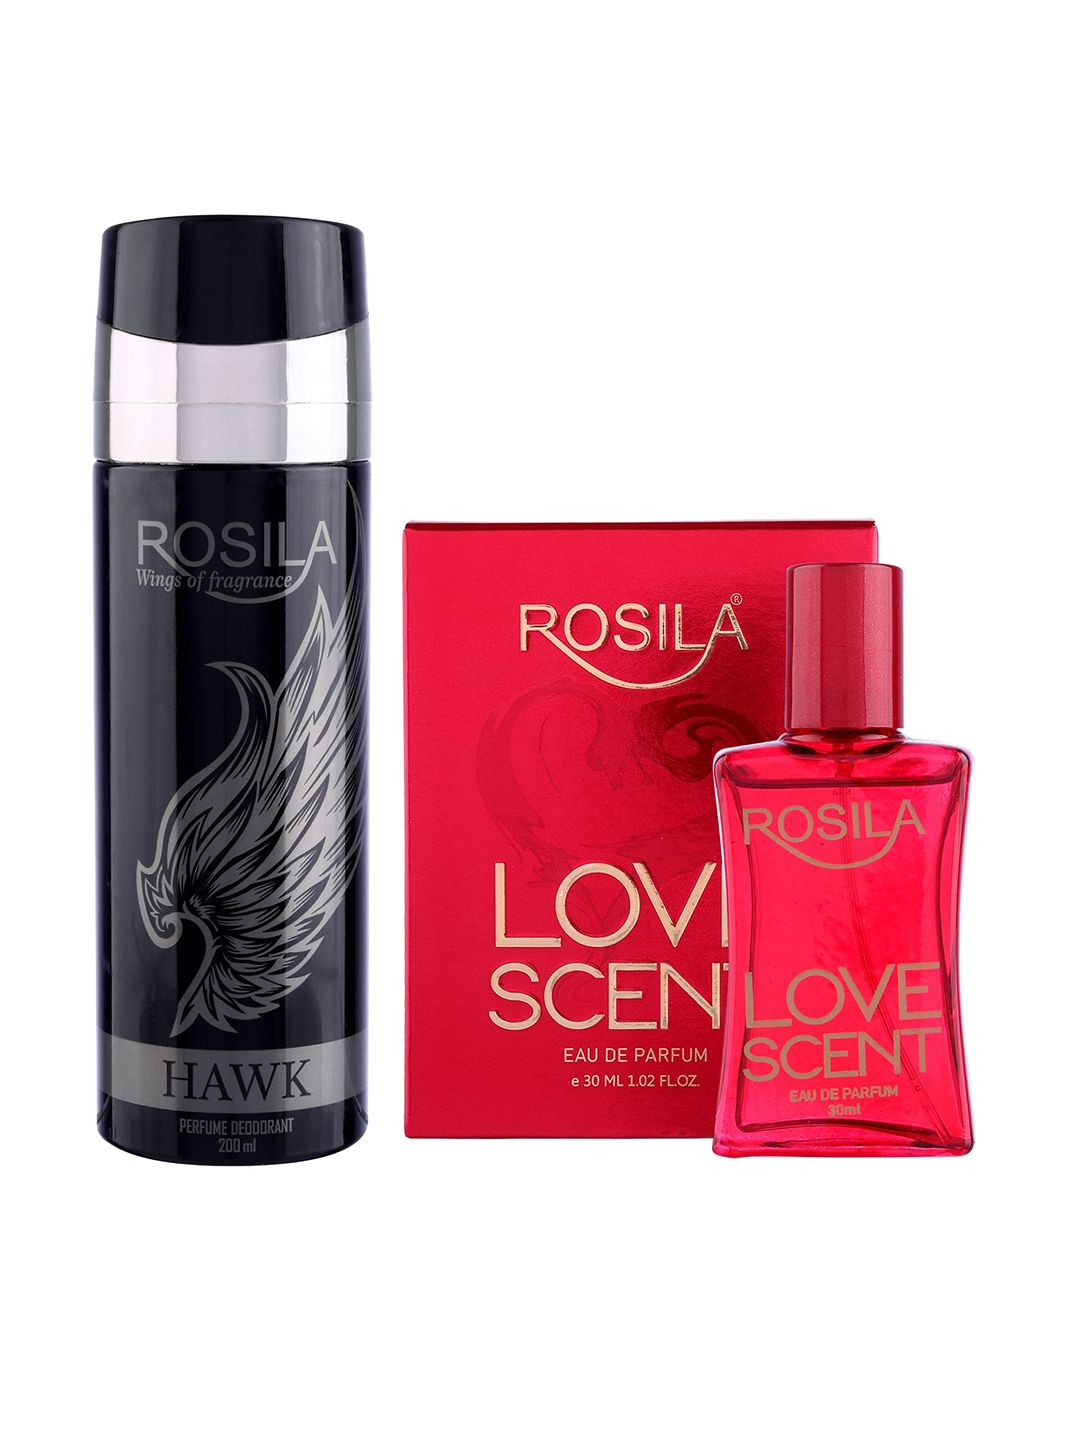 ROSILA Set of Love Scent Eau De Parfum 30 ml & Hawk Deodorant 200 ml Price in India